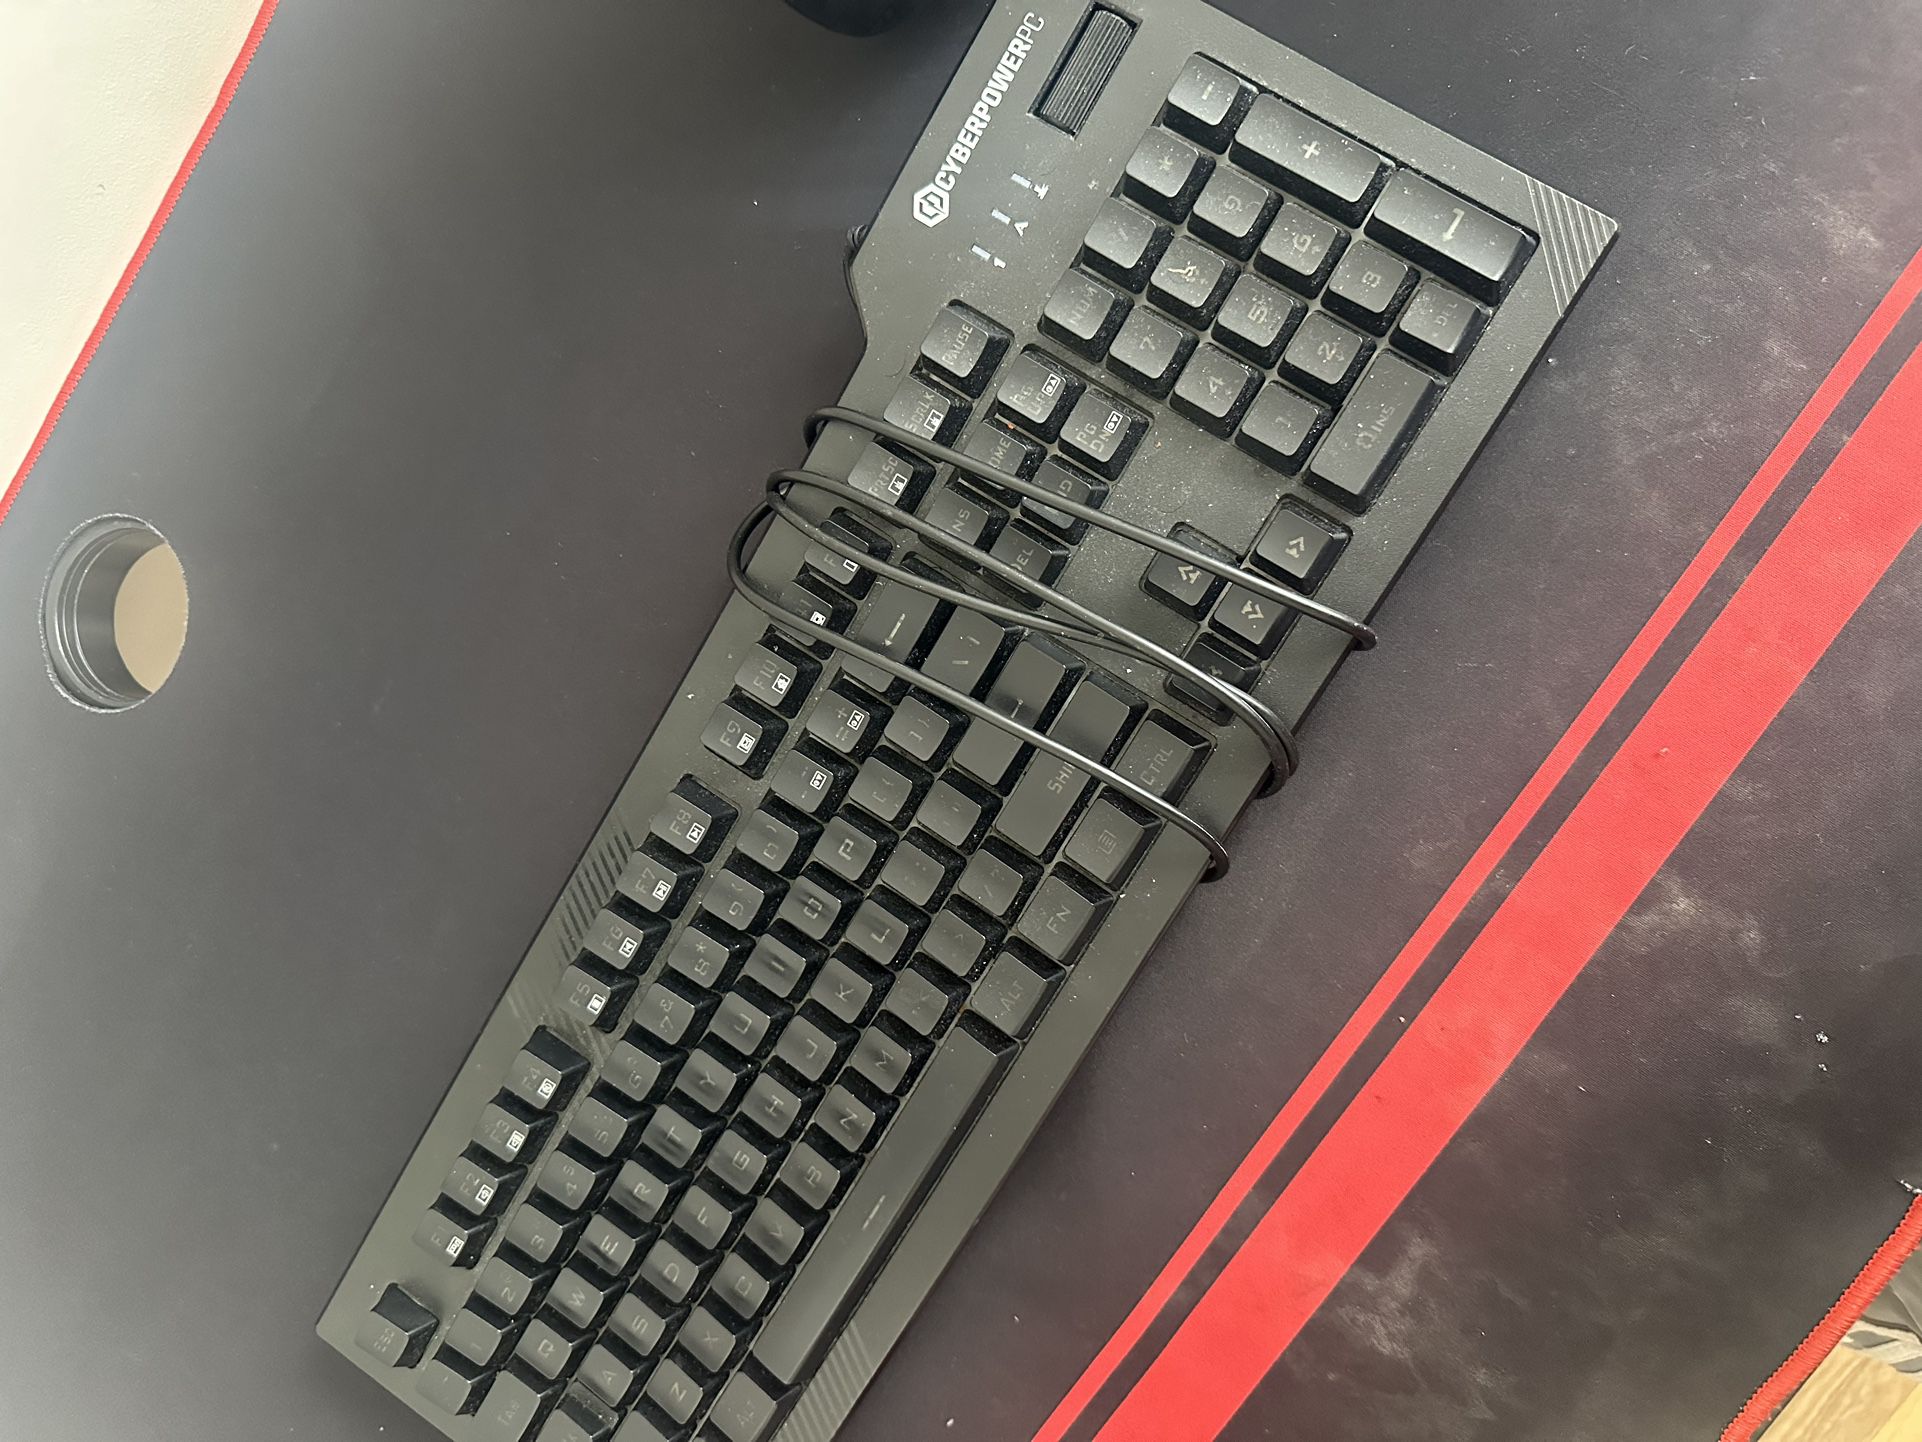 Cyberpowerpc Keyboard